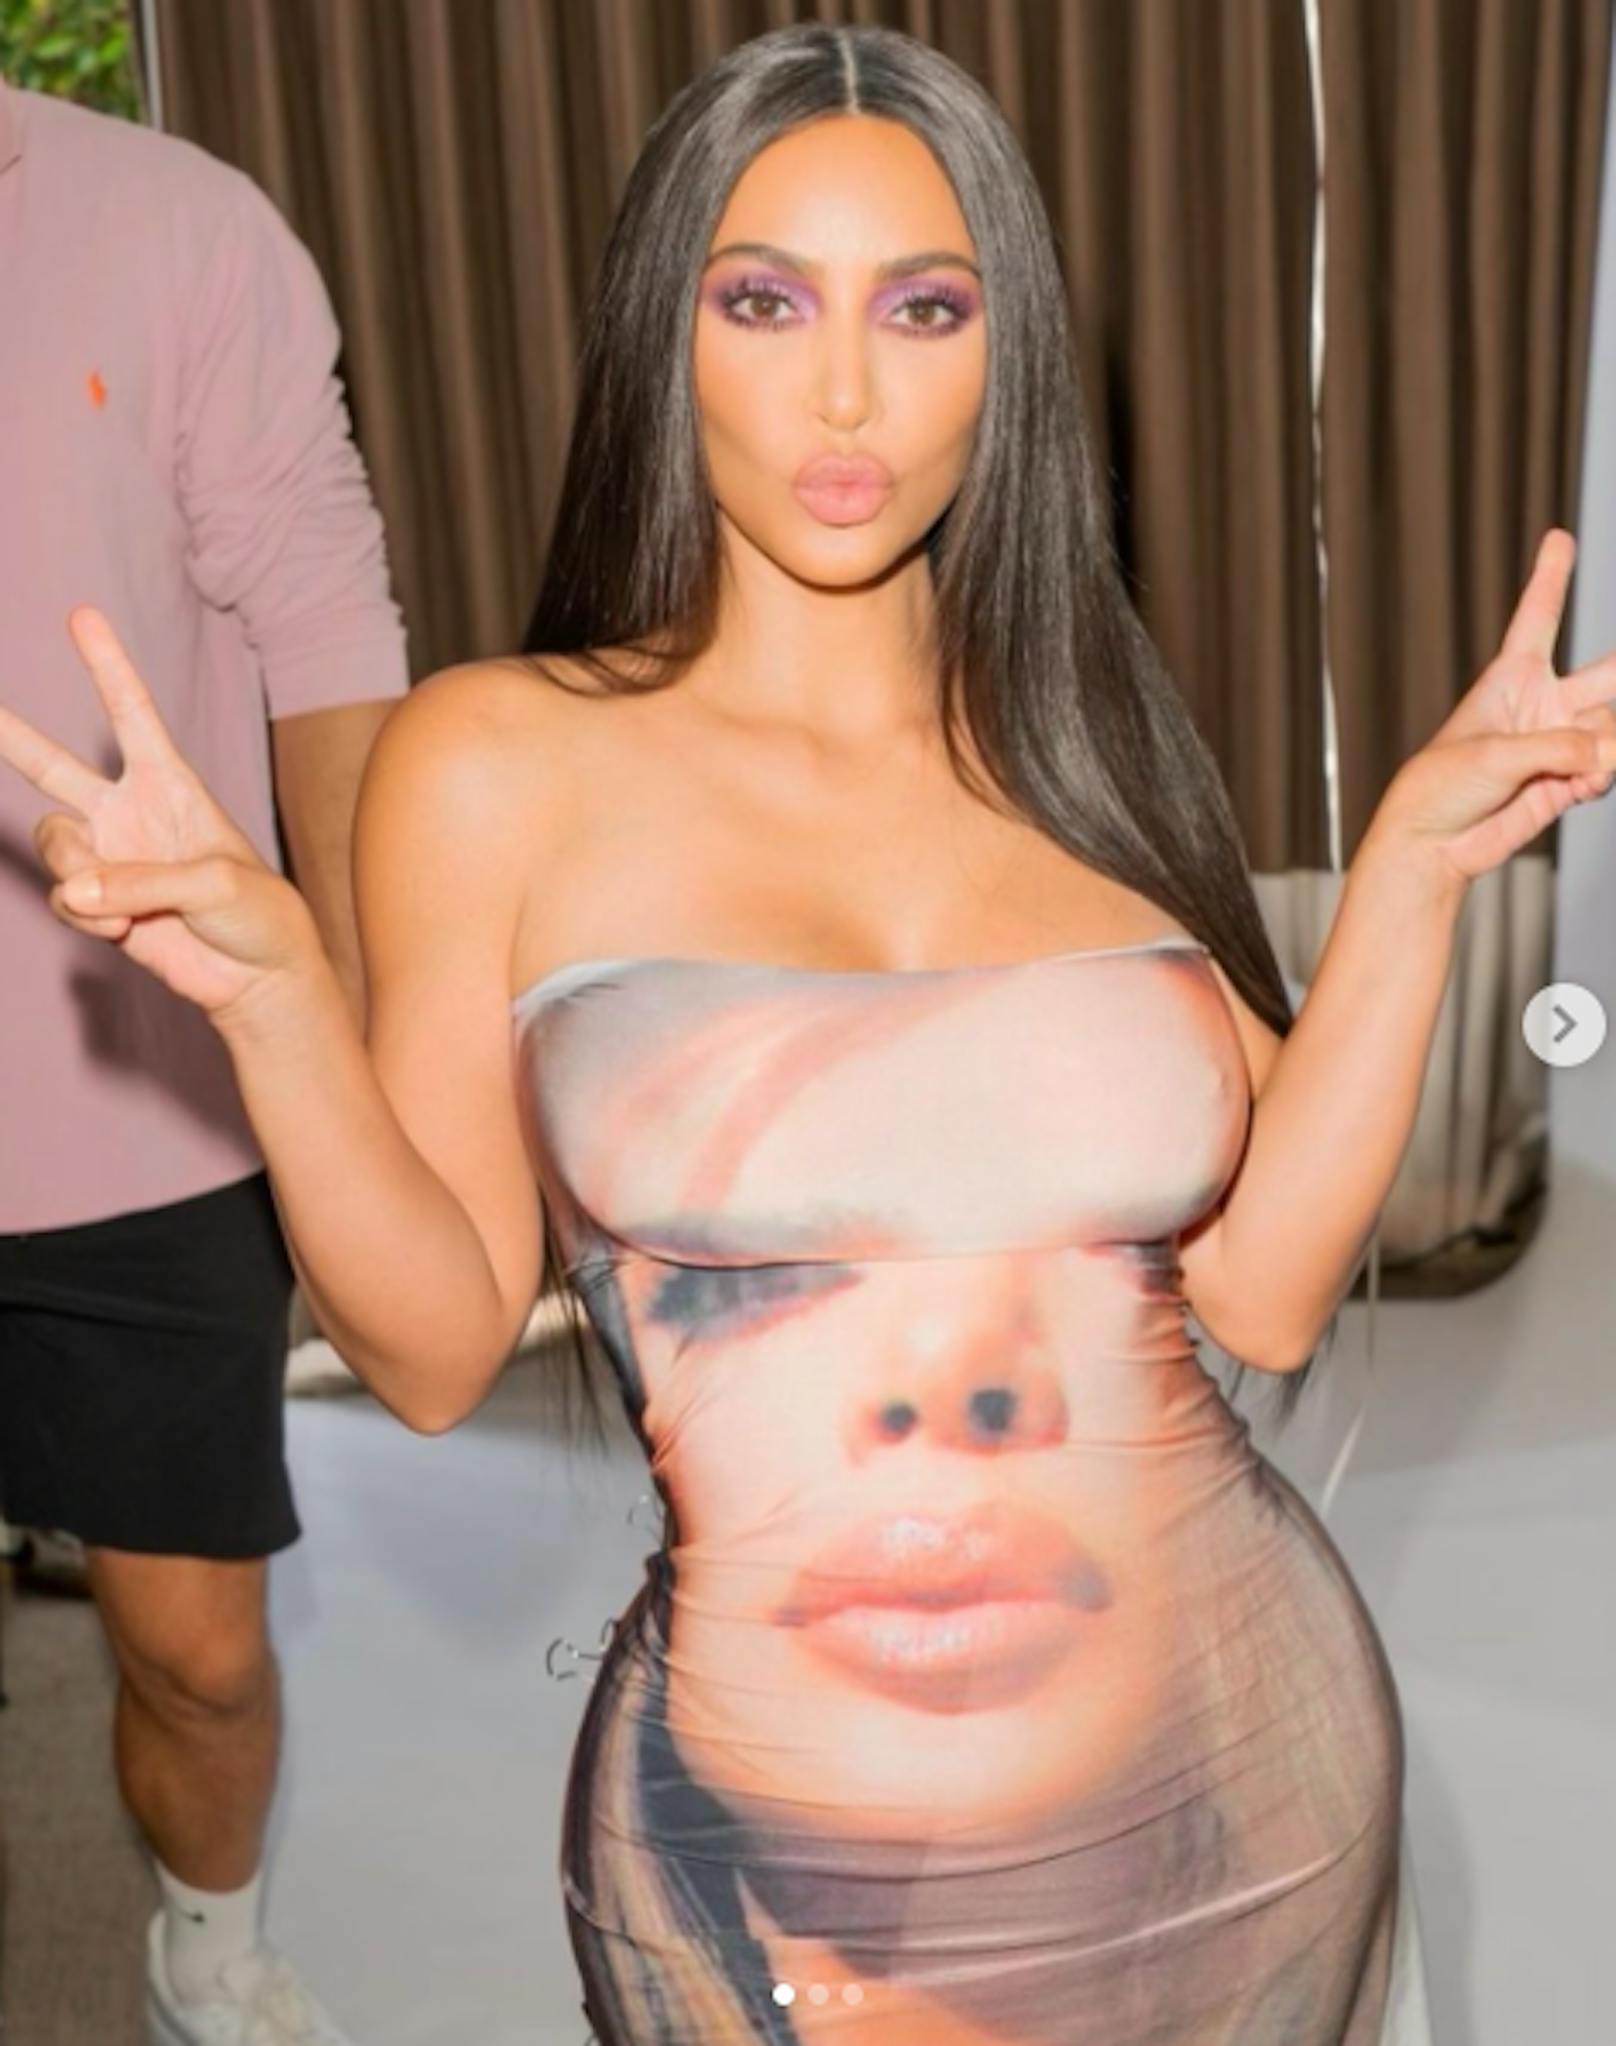 04.12.2020: "Ich habe diesen Tag geliebt", schrieb <strong>Kim Kardashian</strong> zu diesem Foto. Das It-Girl posiert hier in einem Kleid auf dem ihr eigenes Gesicht prangt. 